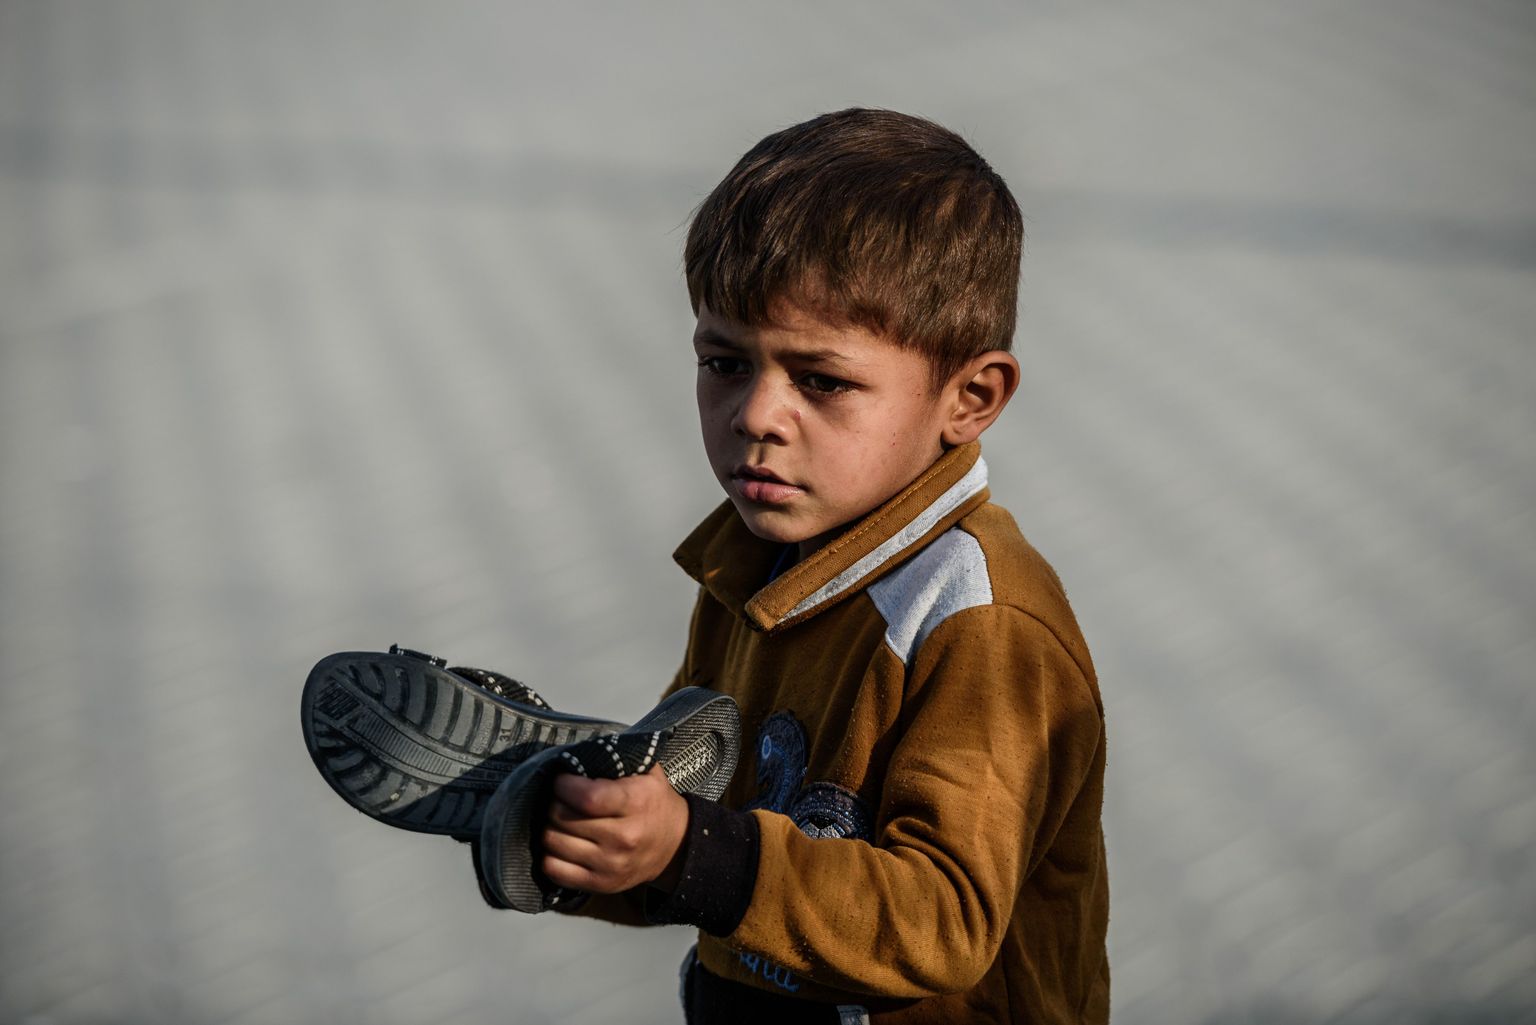 Süüria lapspõgenik Türgis.